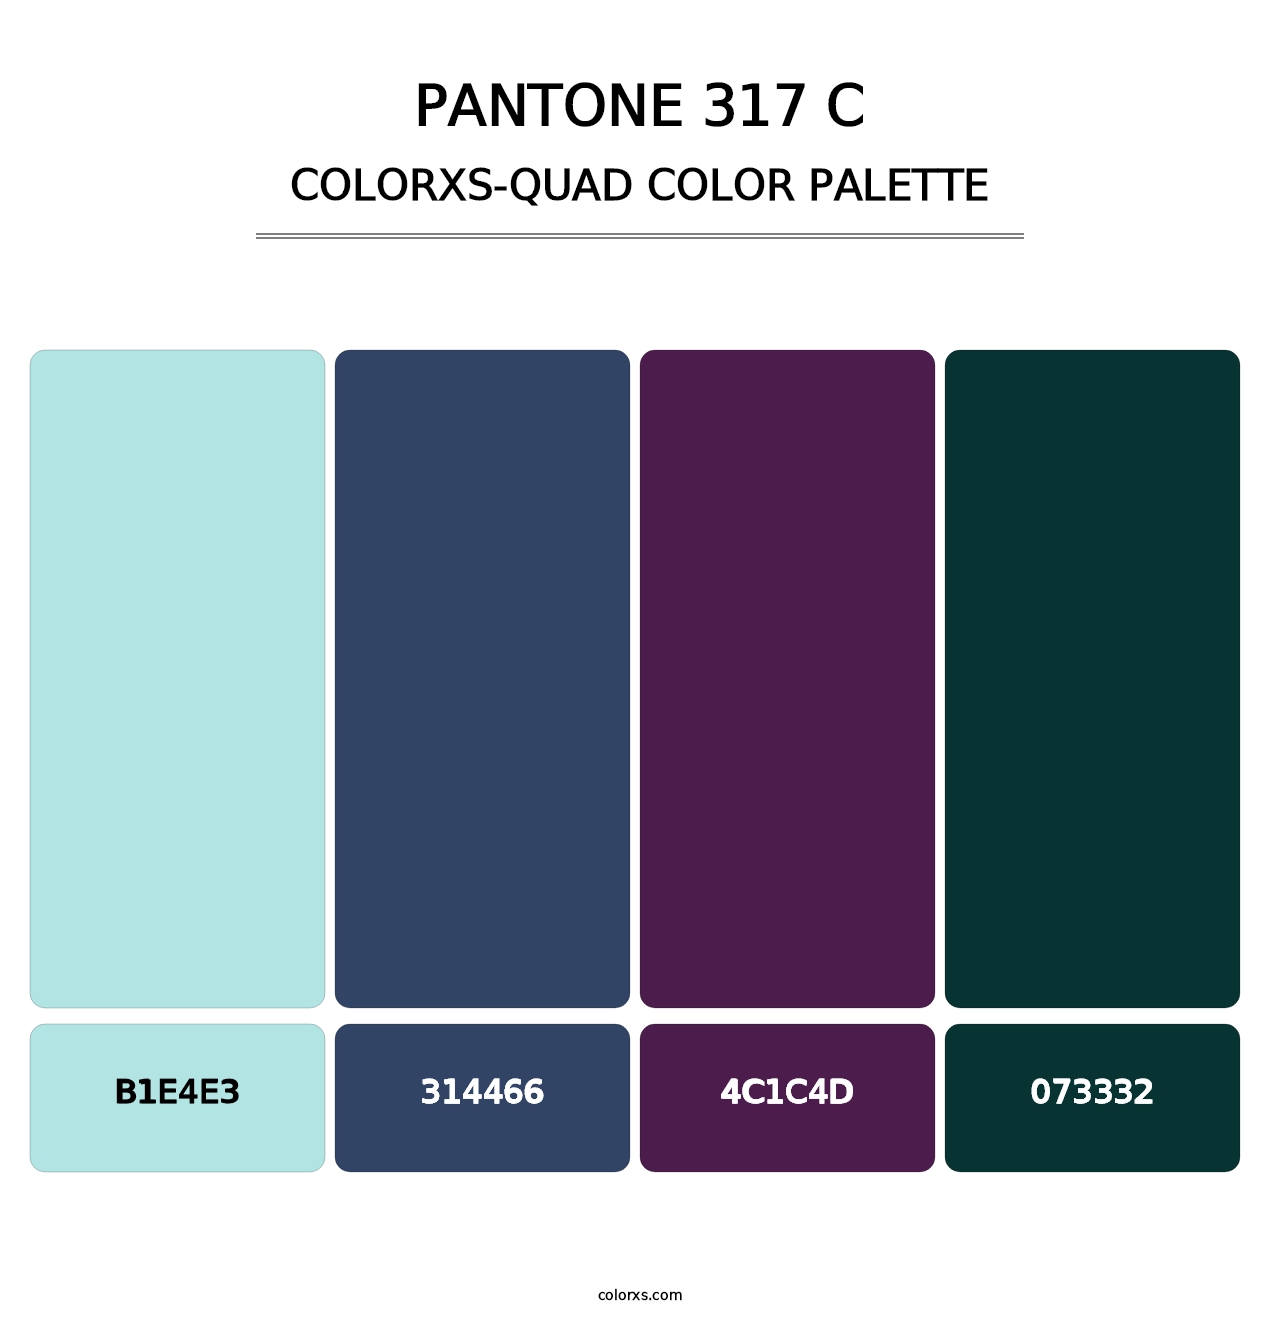 PANTONE 317 C - Colorxs Quad Palette